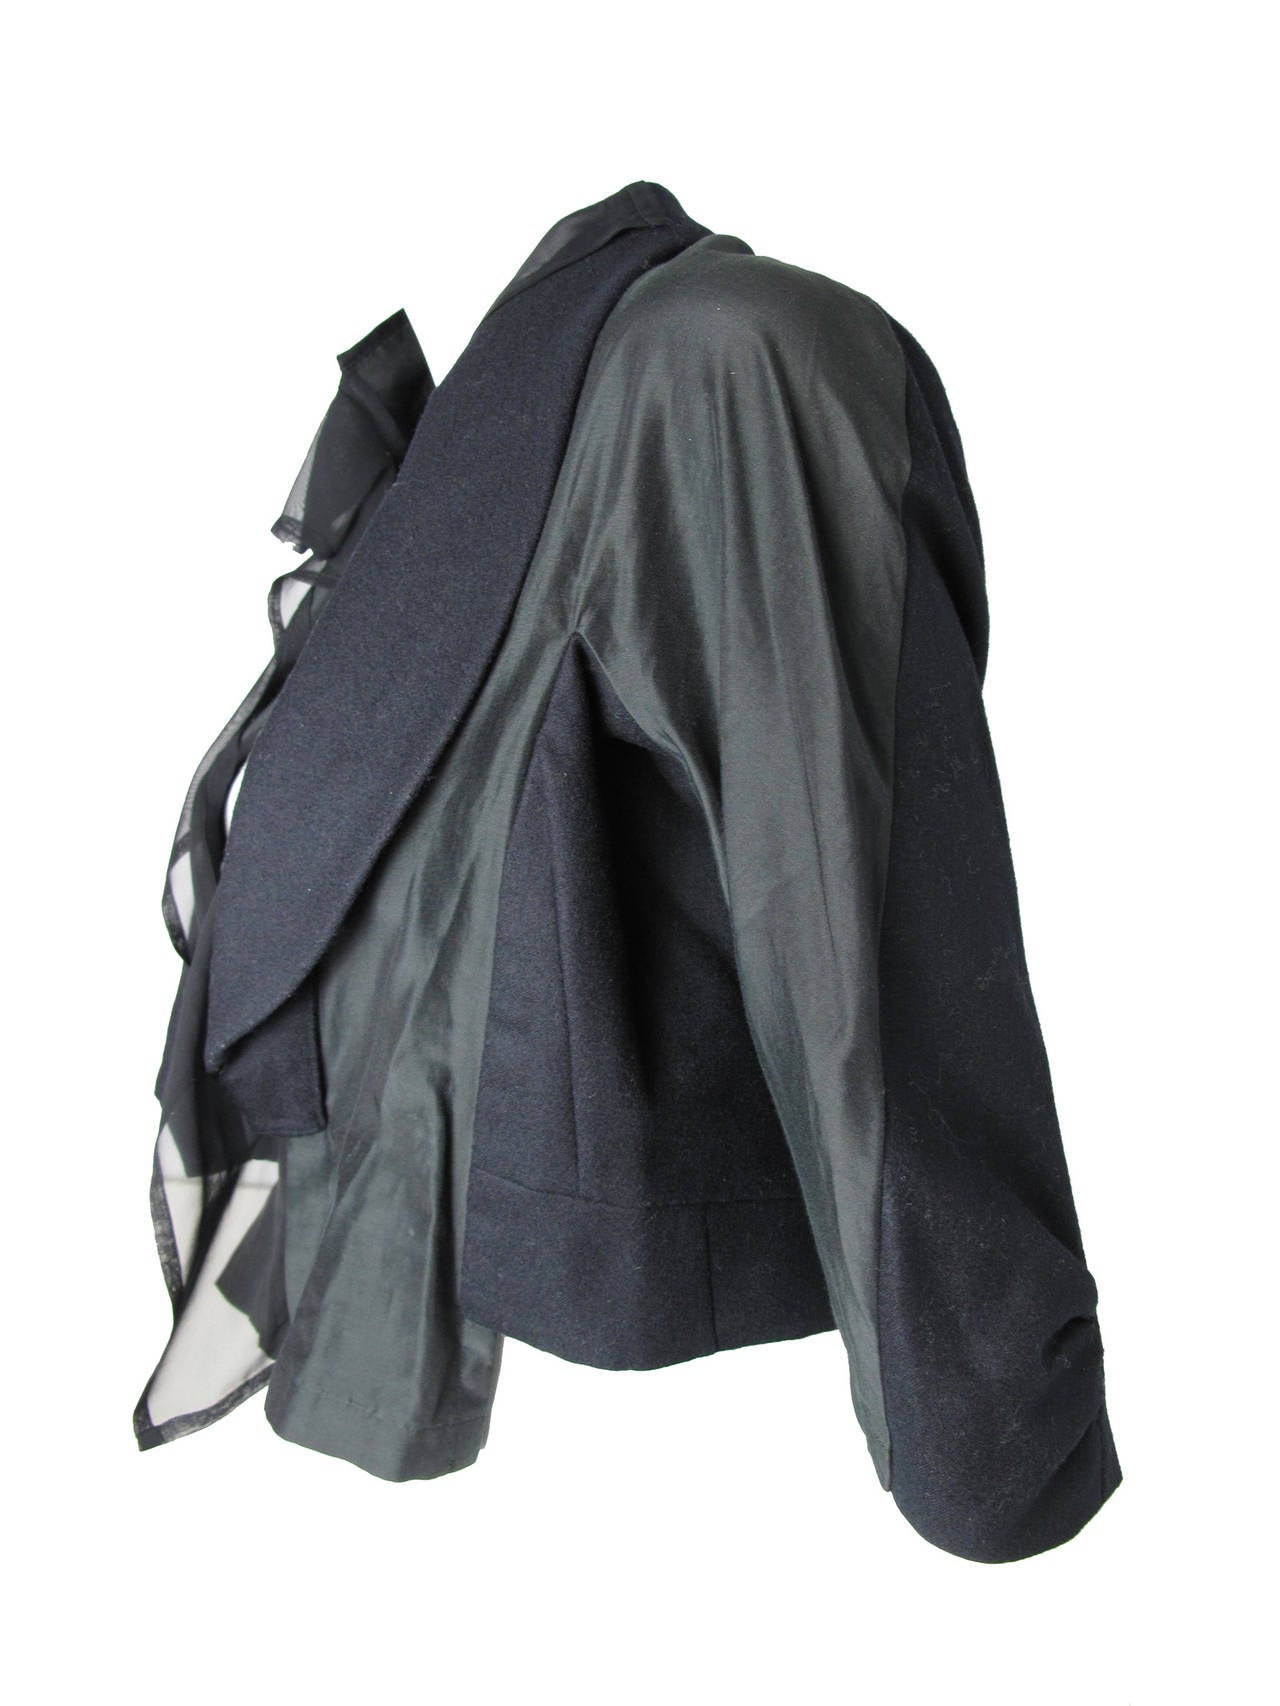 Comme des Garcons cropped jacket.  Condition: Excellent. Size M